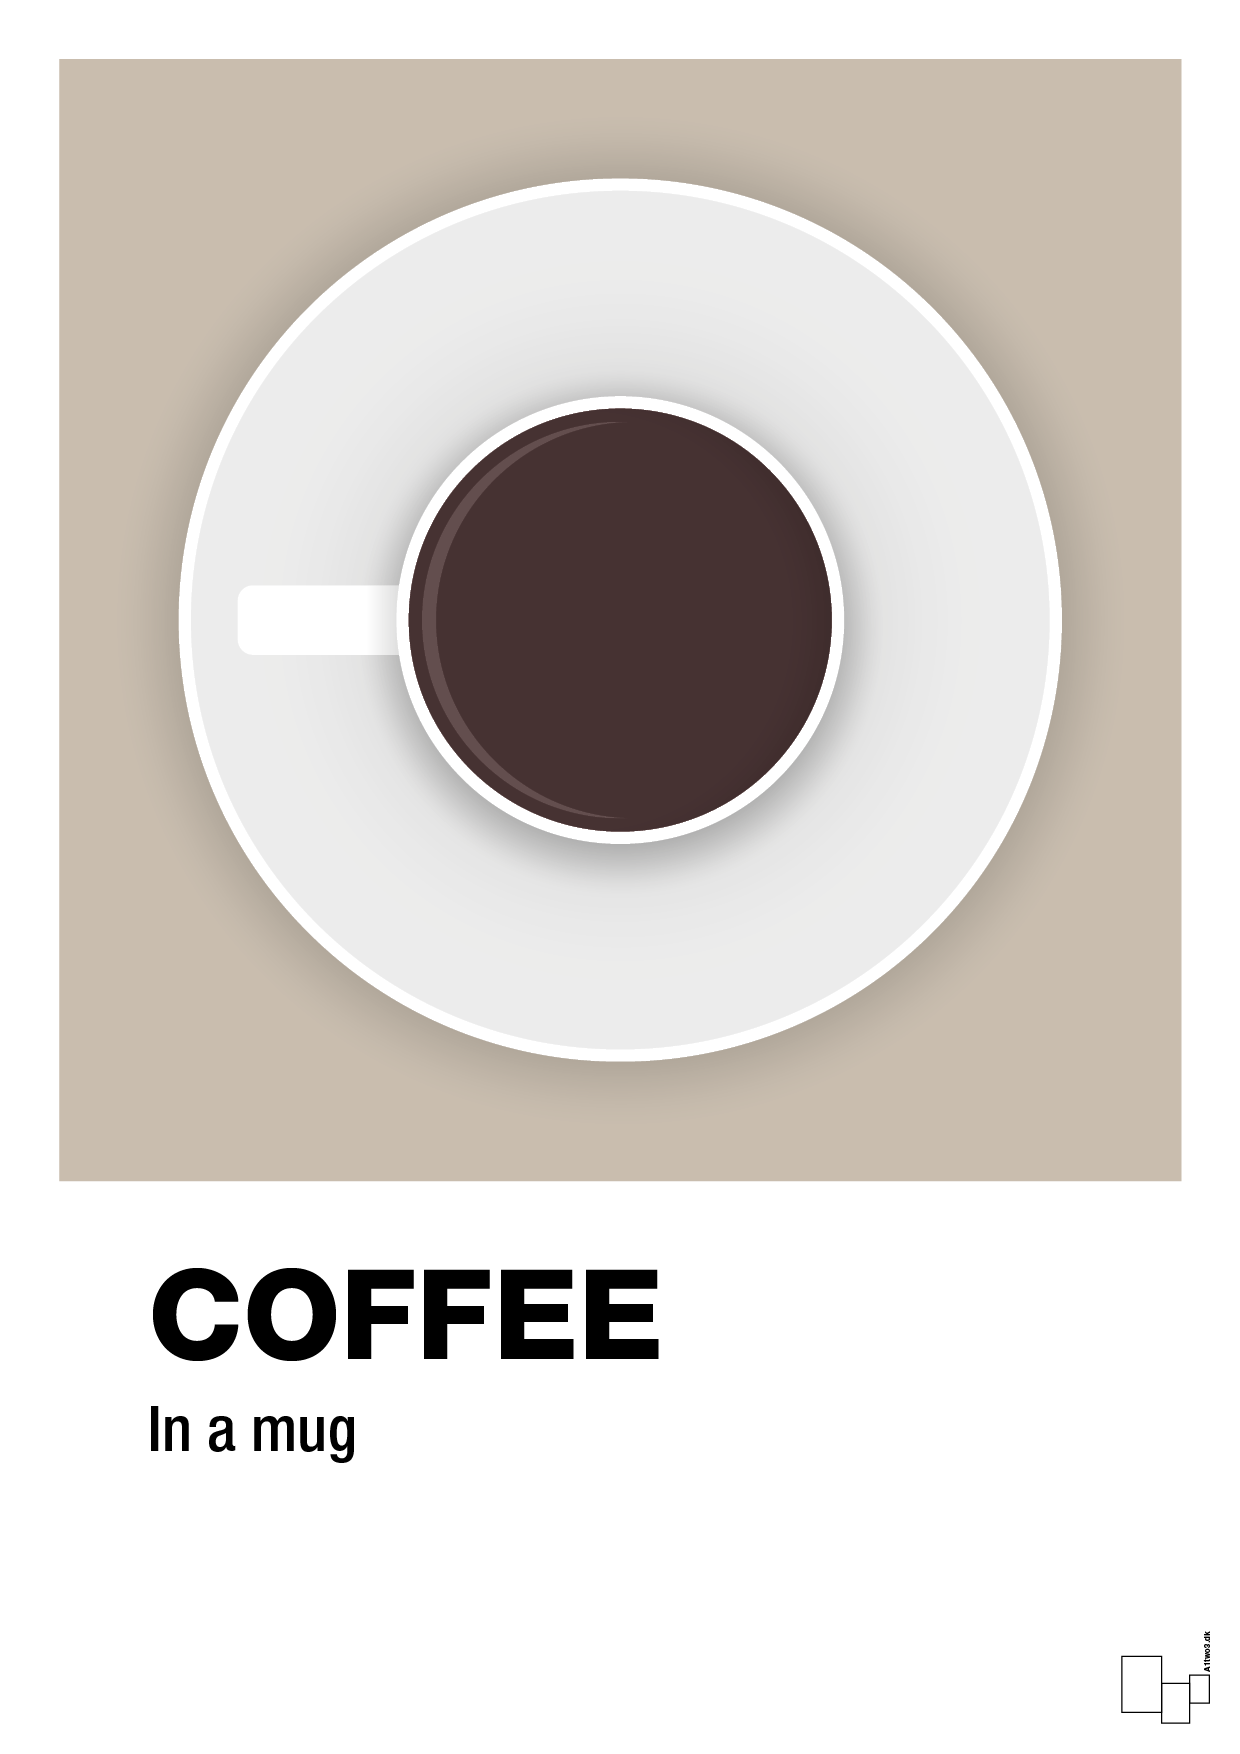 coffee in a mug - Plakat med Mad & Drikke i Creamy Mushroom